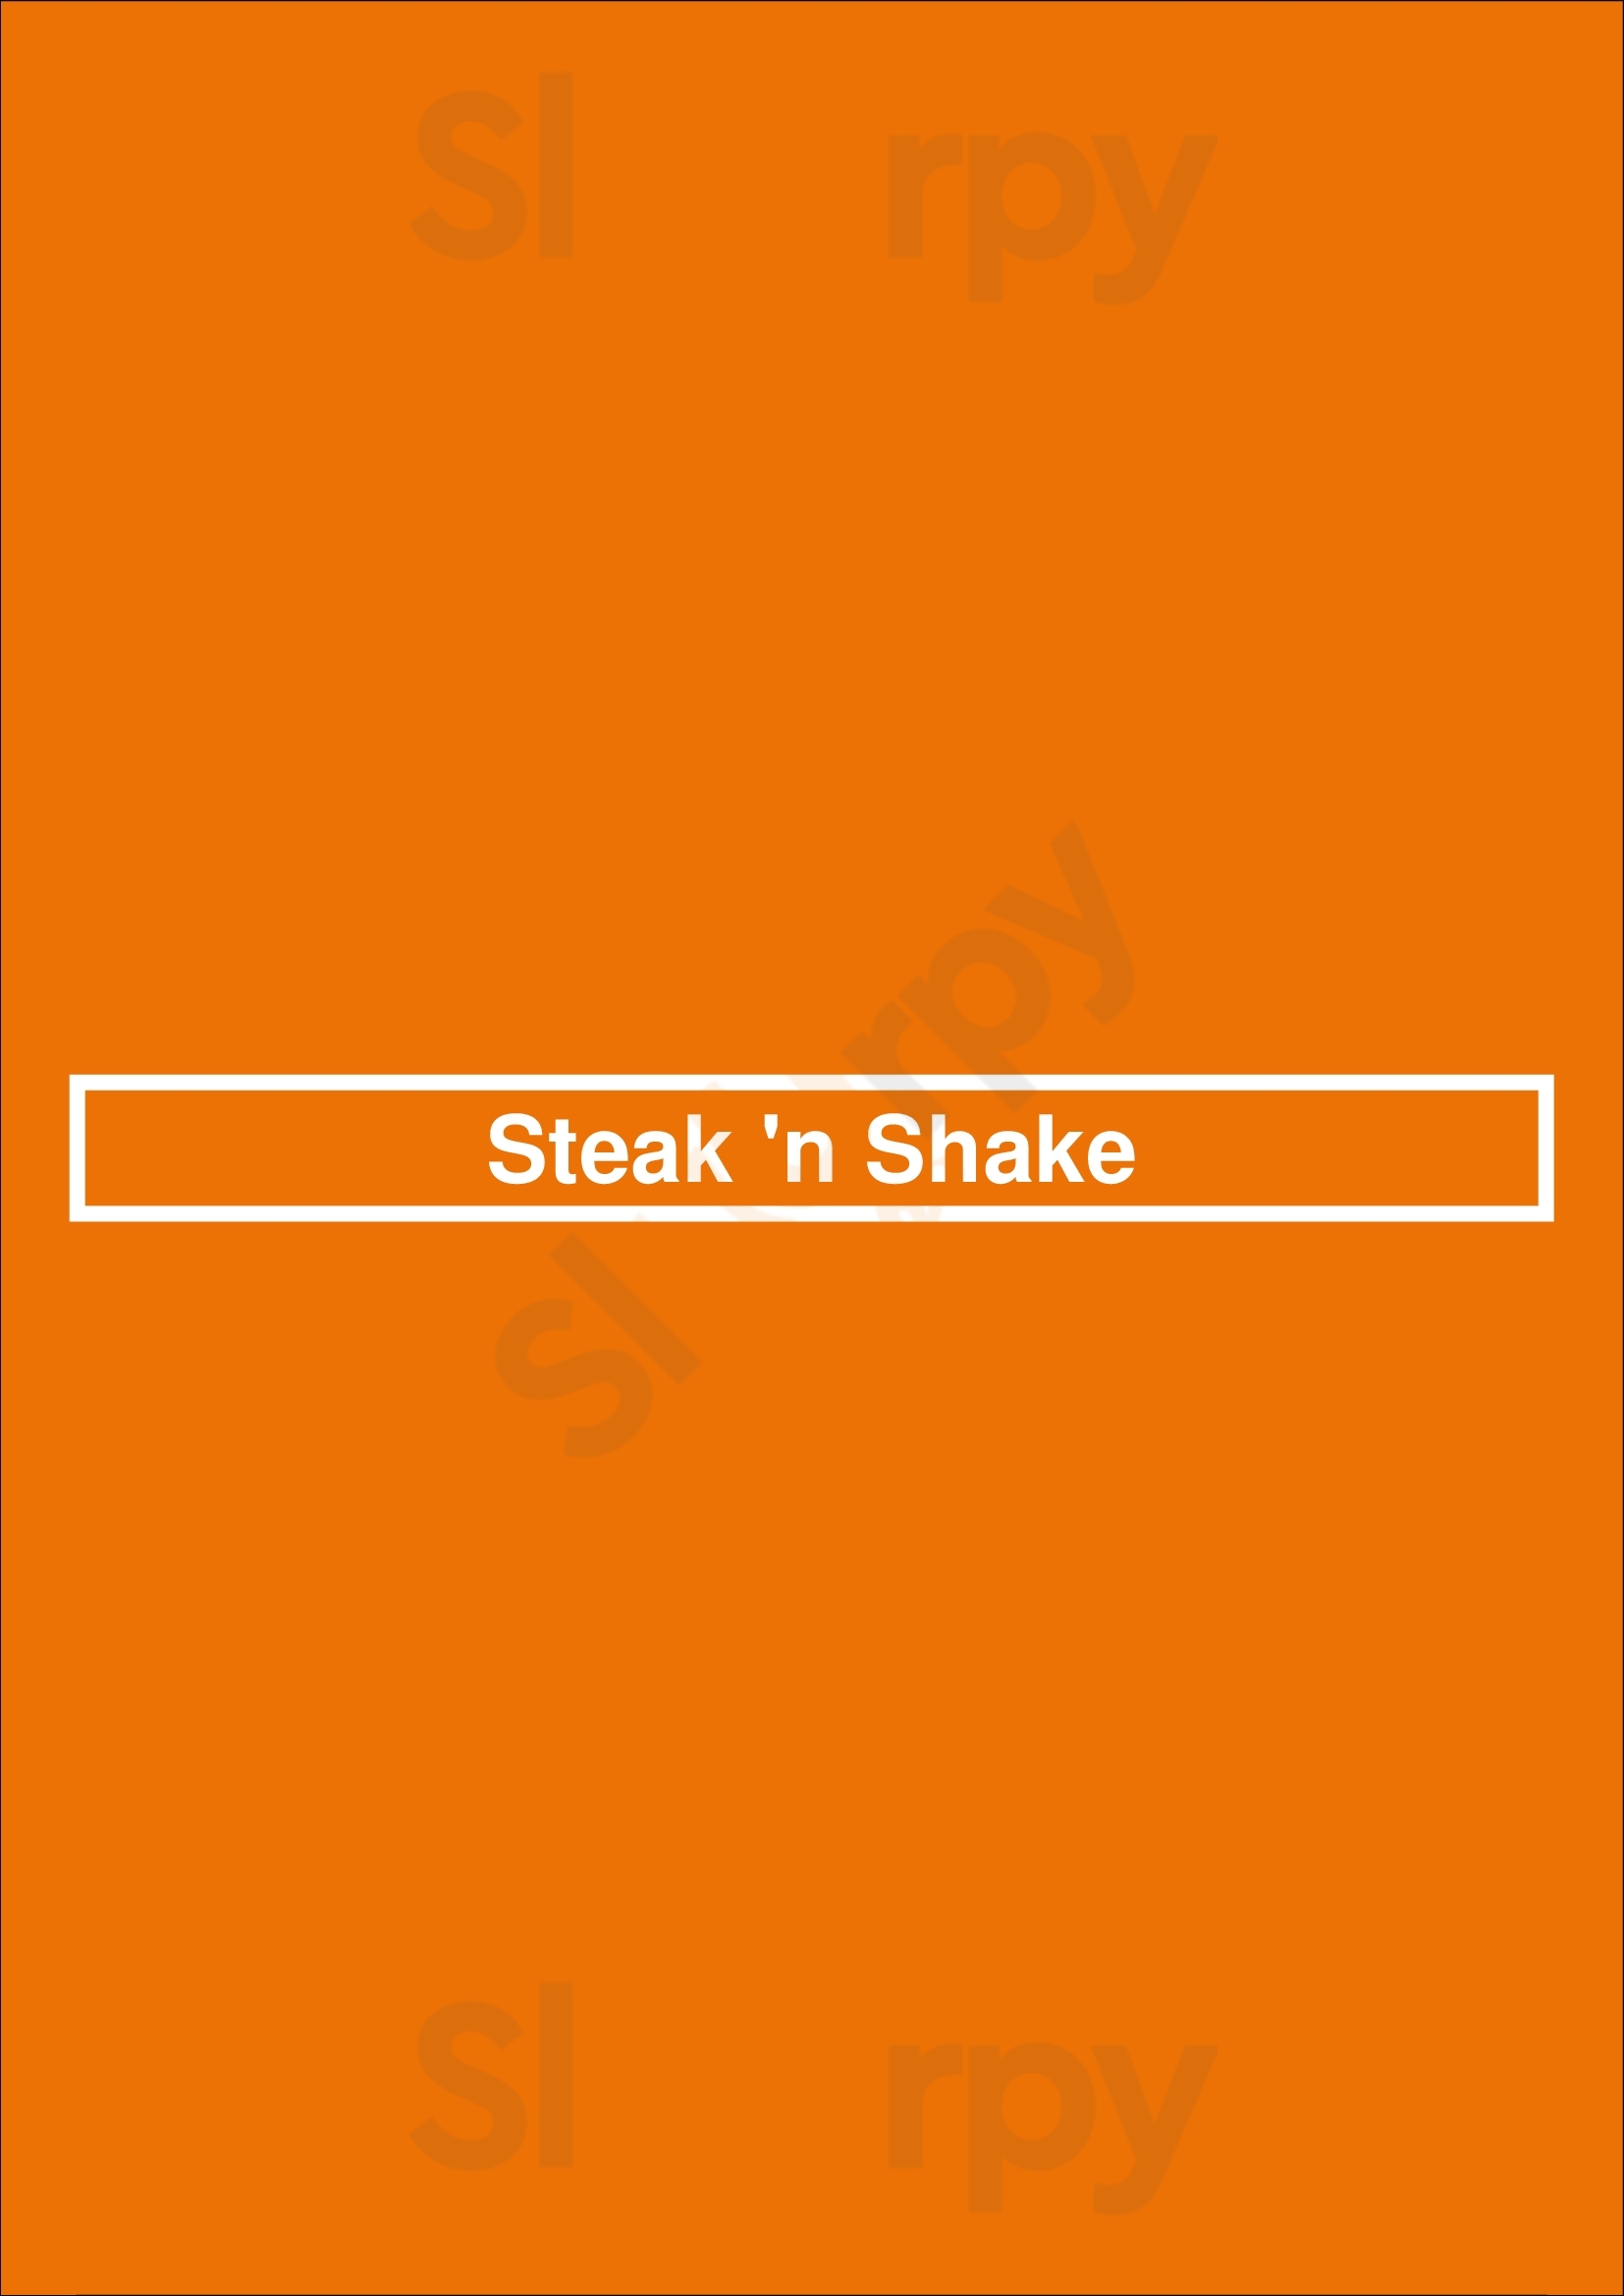 Steak 'n Shake Greenville Menu - 1